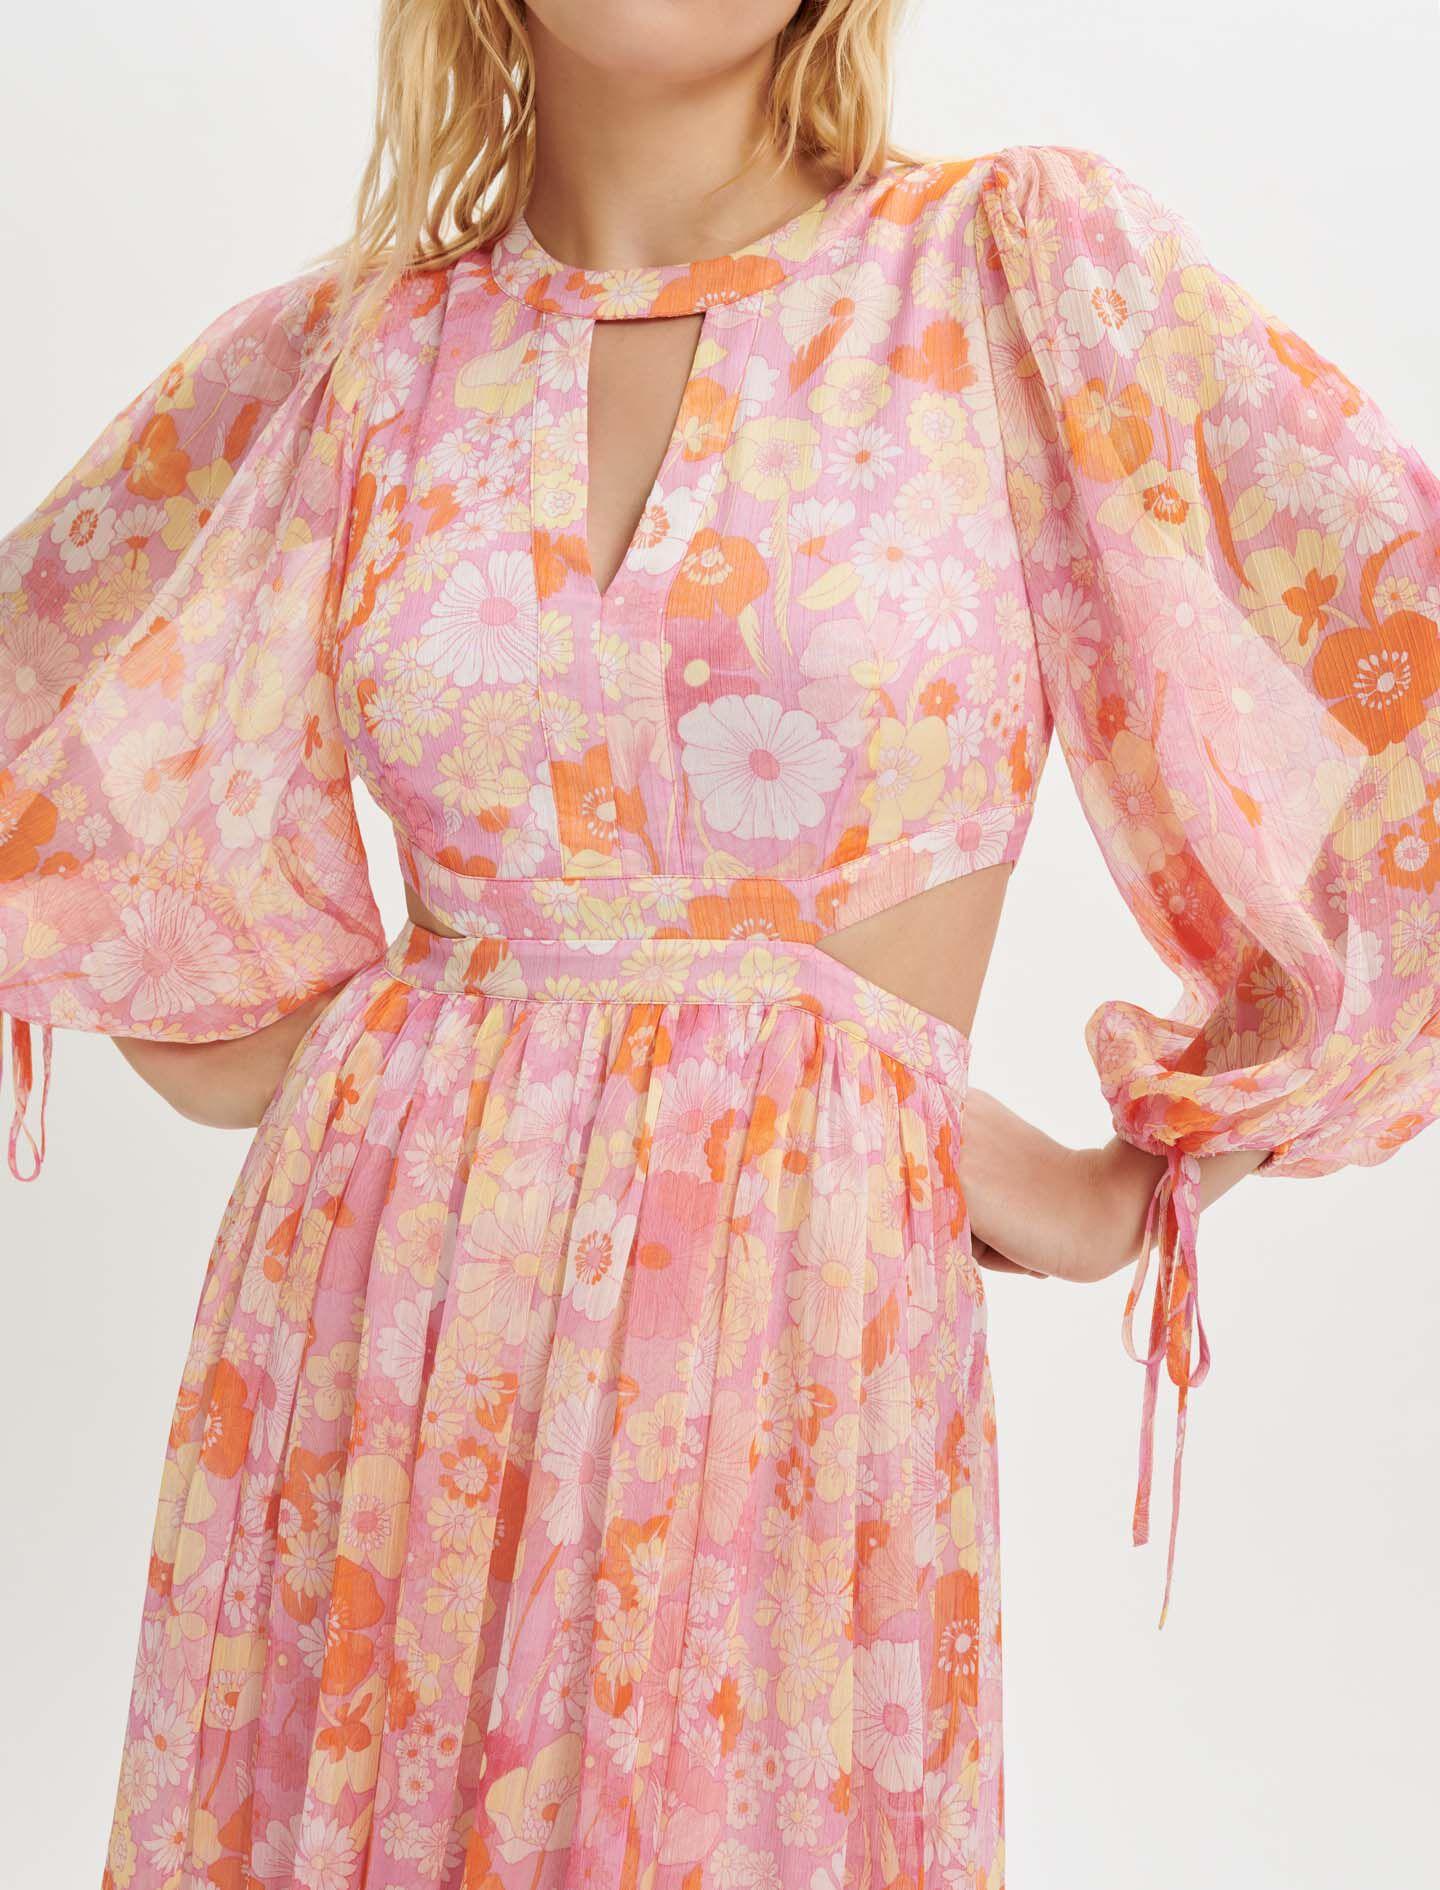 Maje Flower Power Print Muslin Dress in Pink | Lyst